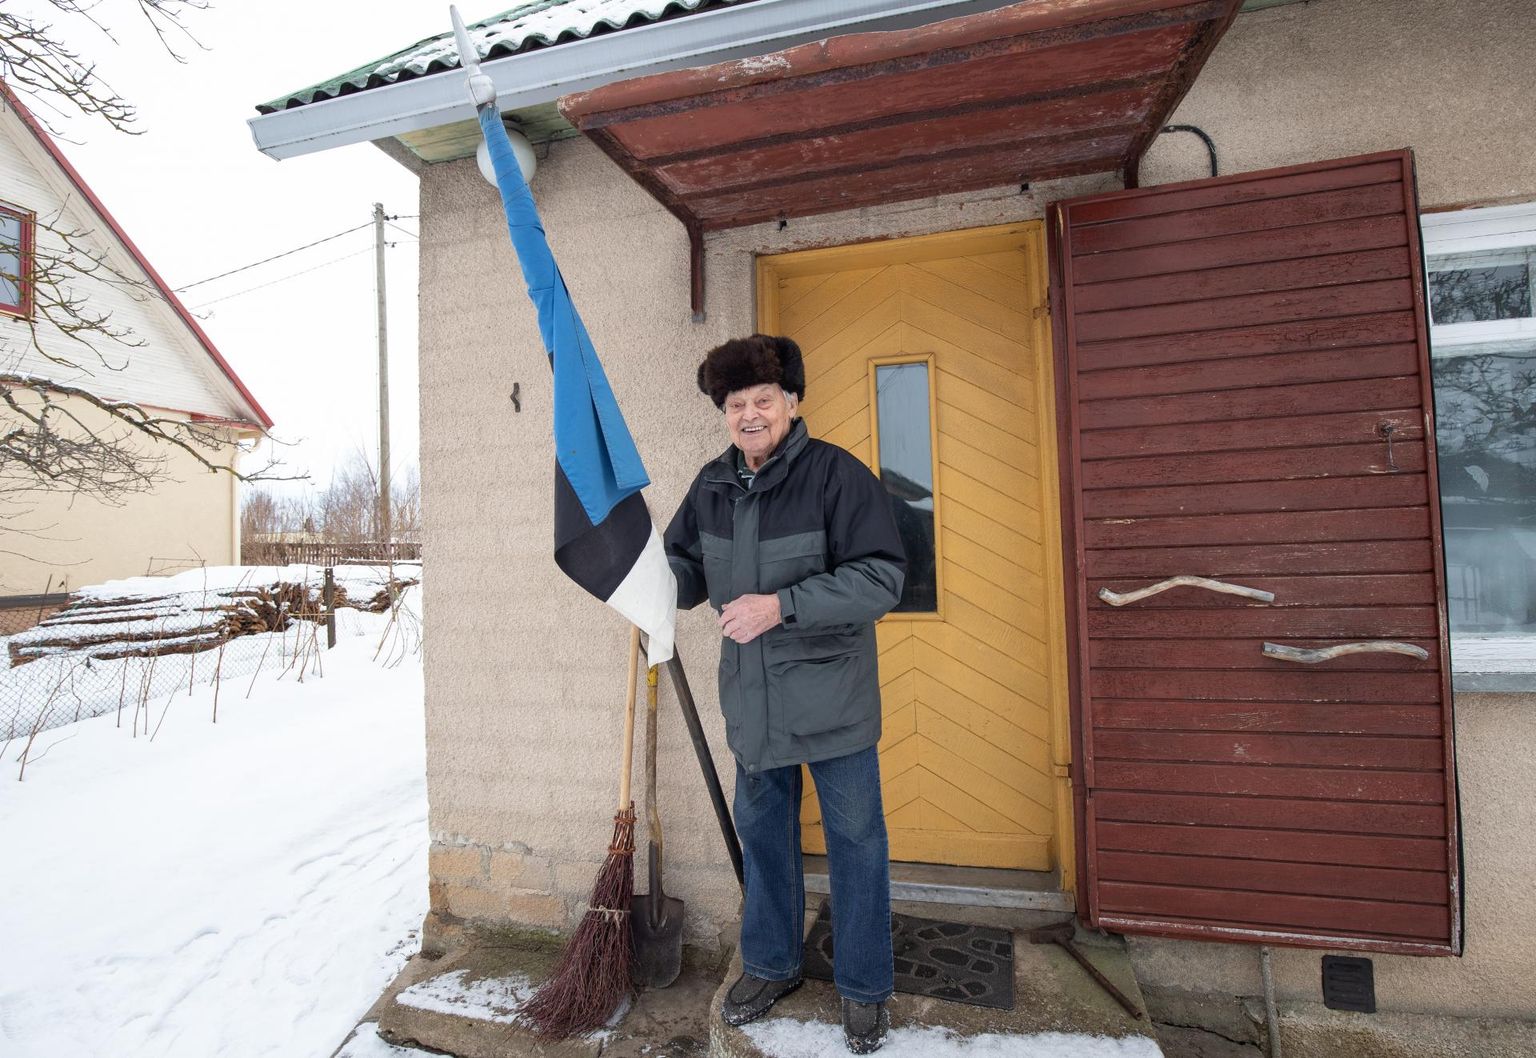 Riigi aastapäeval paneb Oskar Rohila maja külge lipu lehvima.